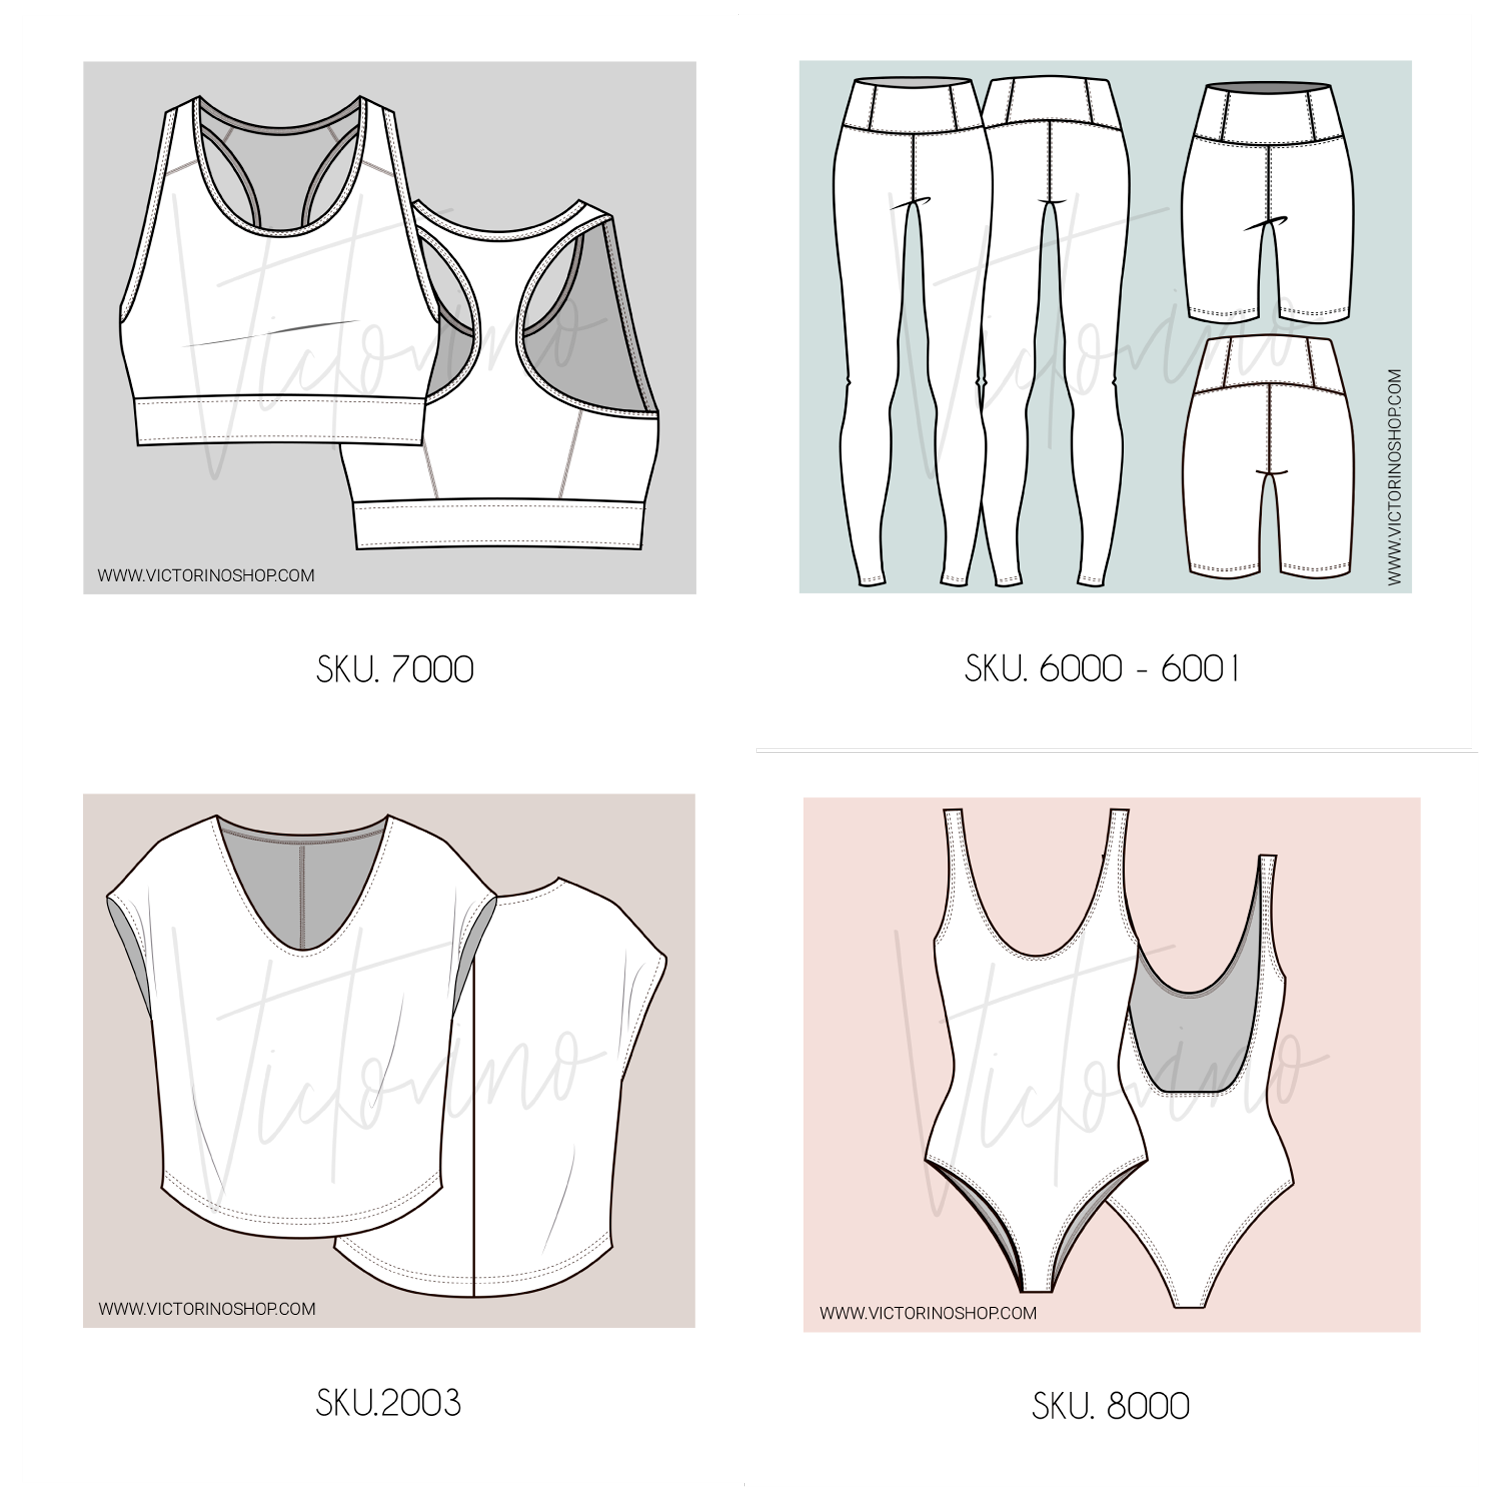 Patrónes de costura - colección deportiva - Victorino